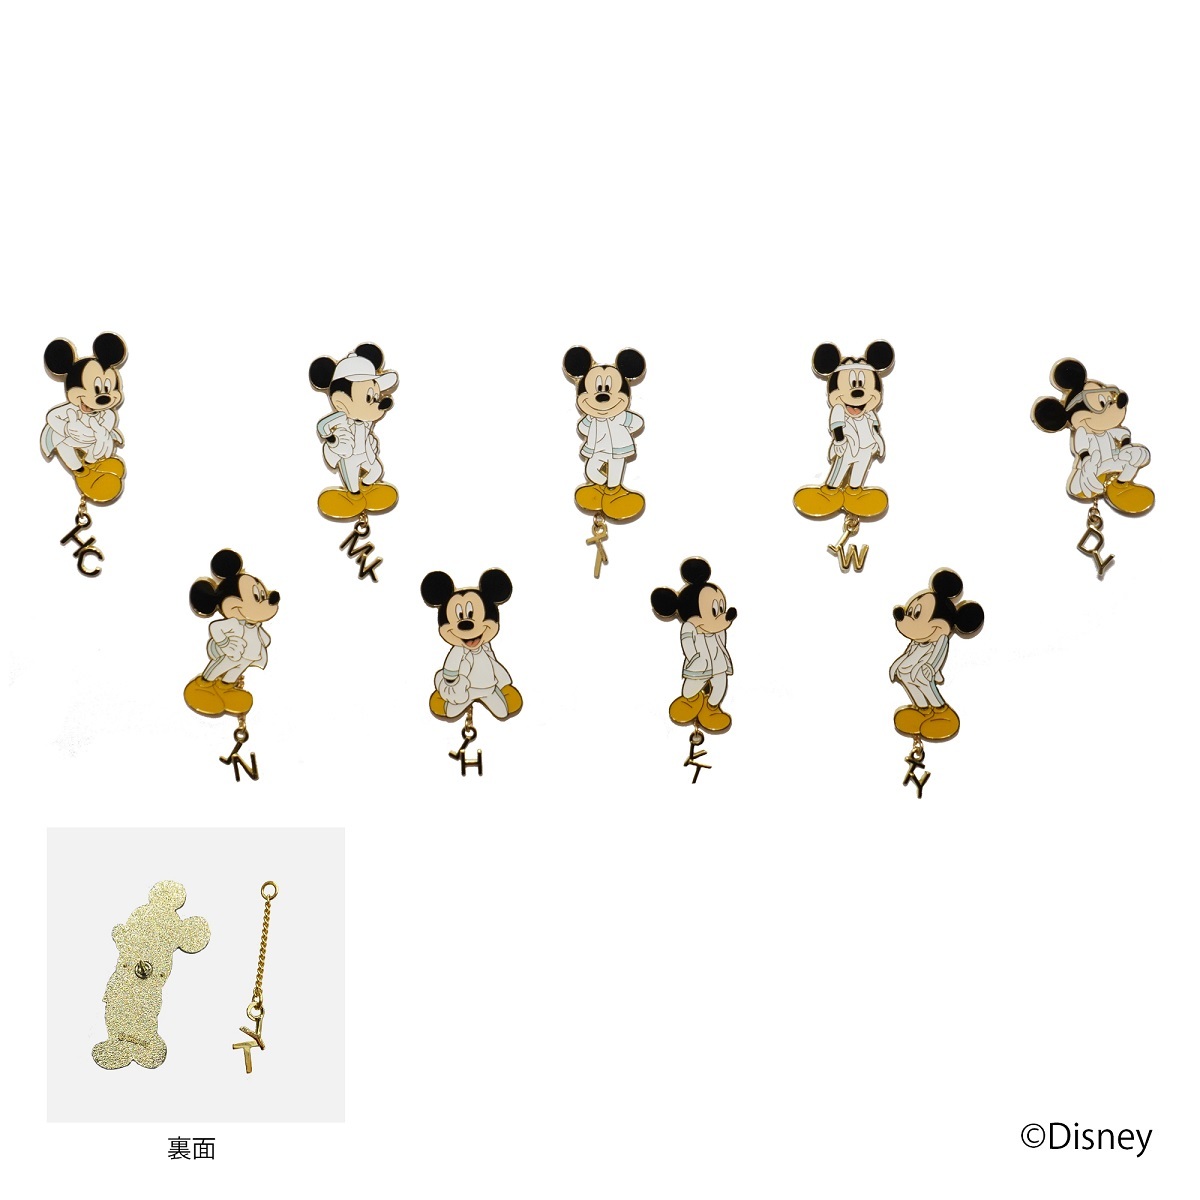 Nct 127 アーティストグッズにミッキーマウスデザイン登場 ミッキーと歌って踊った時の感動を込めた Spice エンタメ特化型情報メディア スパイス